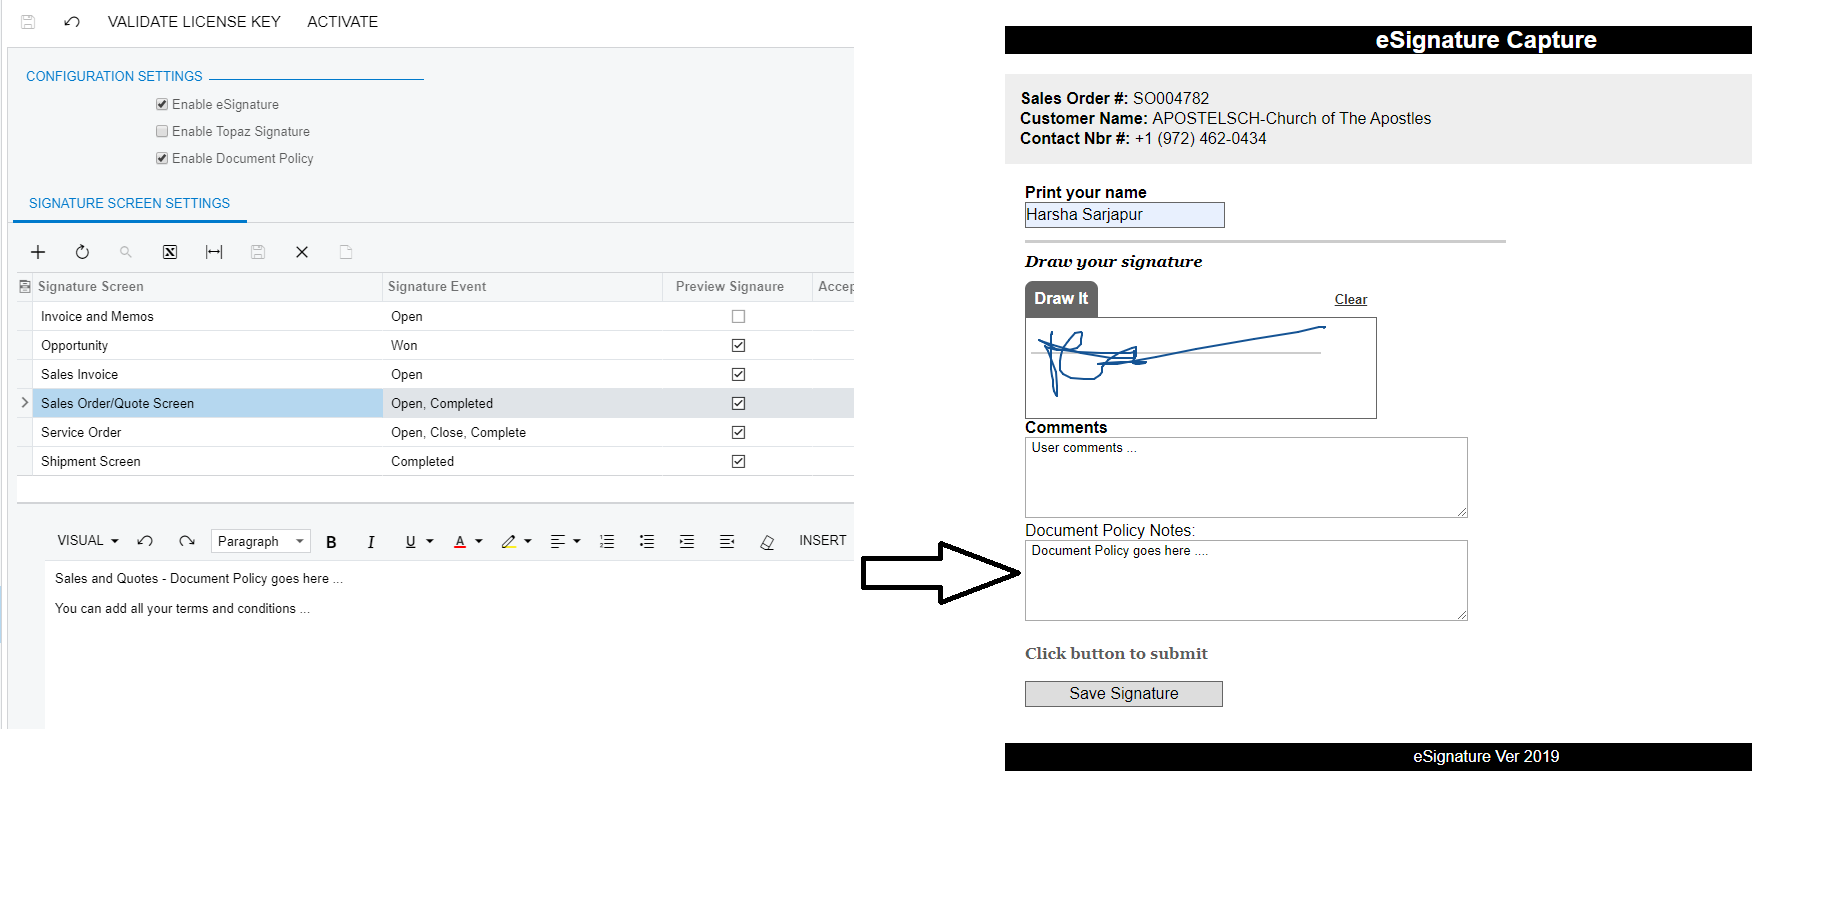 Capture de signature sur l’écran de commande client avec la stratégie de document